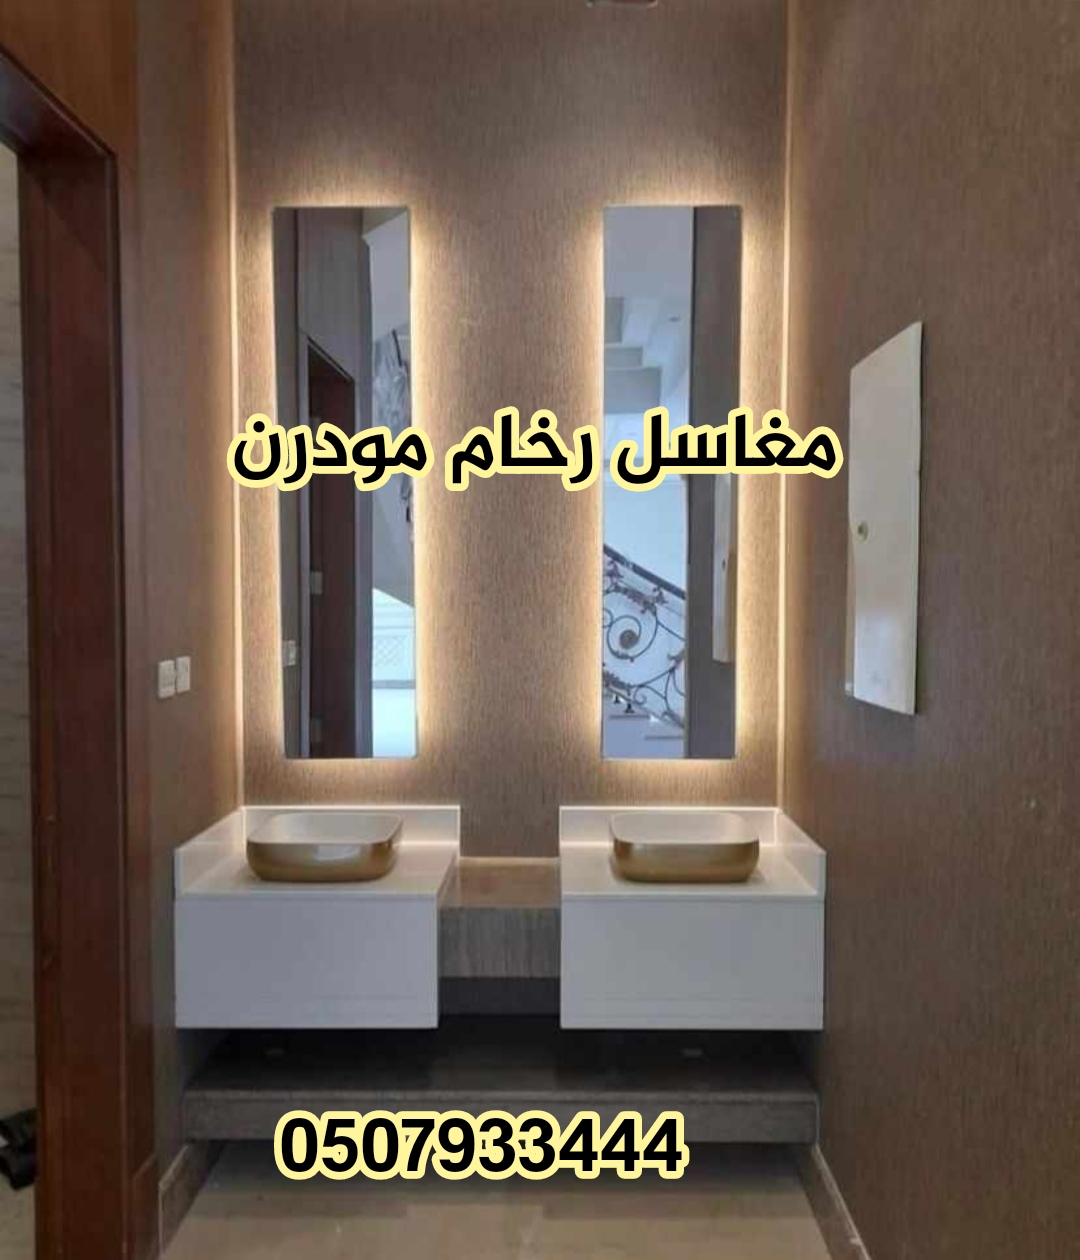  > مغاسل رخام ، تركيب وتفصيل مغاسل رخام حمامات في الرياض